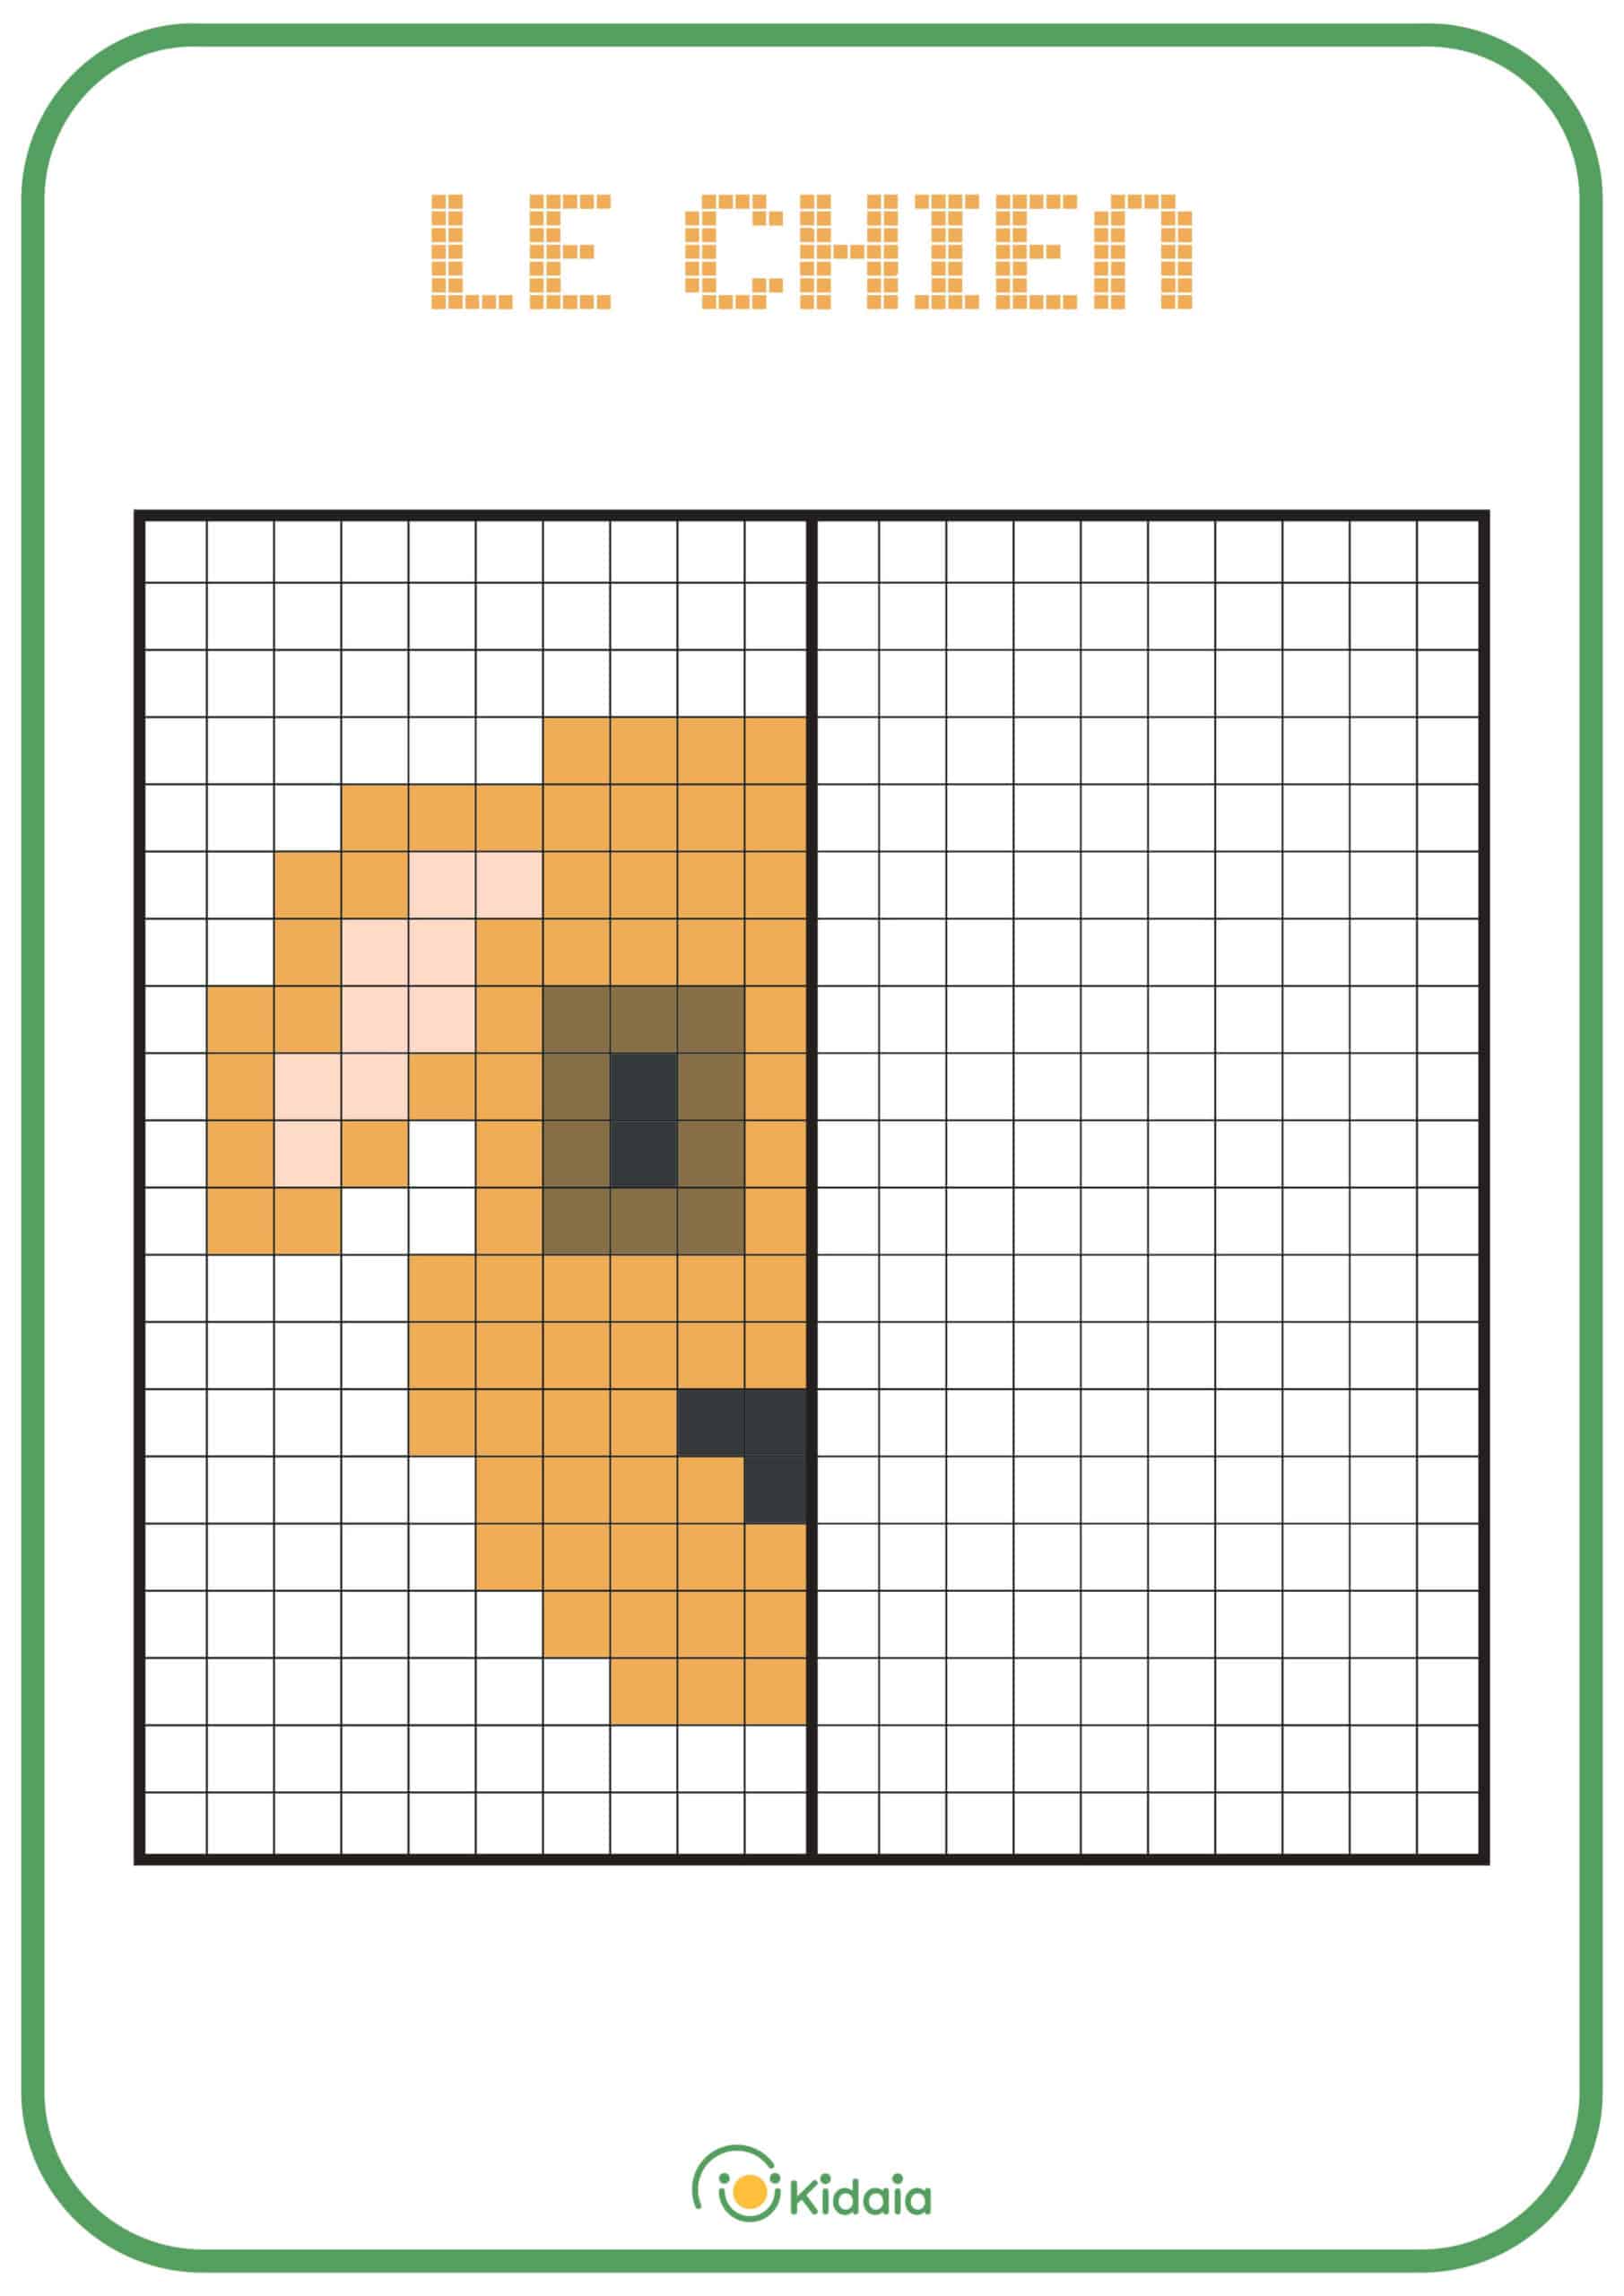 Image de chien en pixel art pour que les enfants apprennent la symétrie.